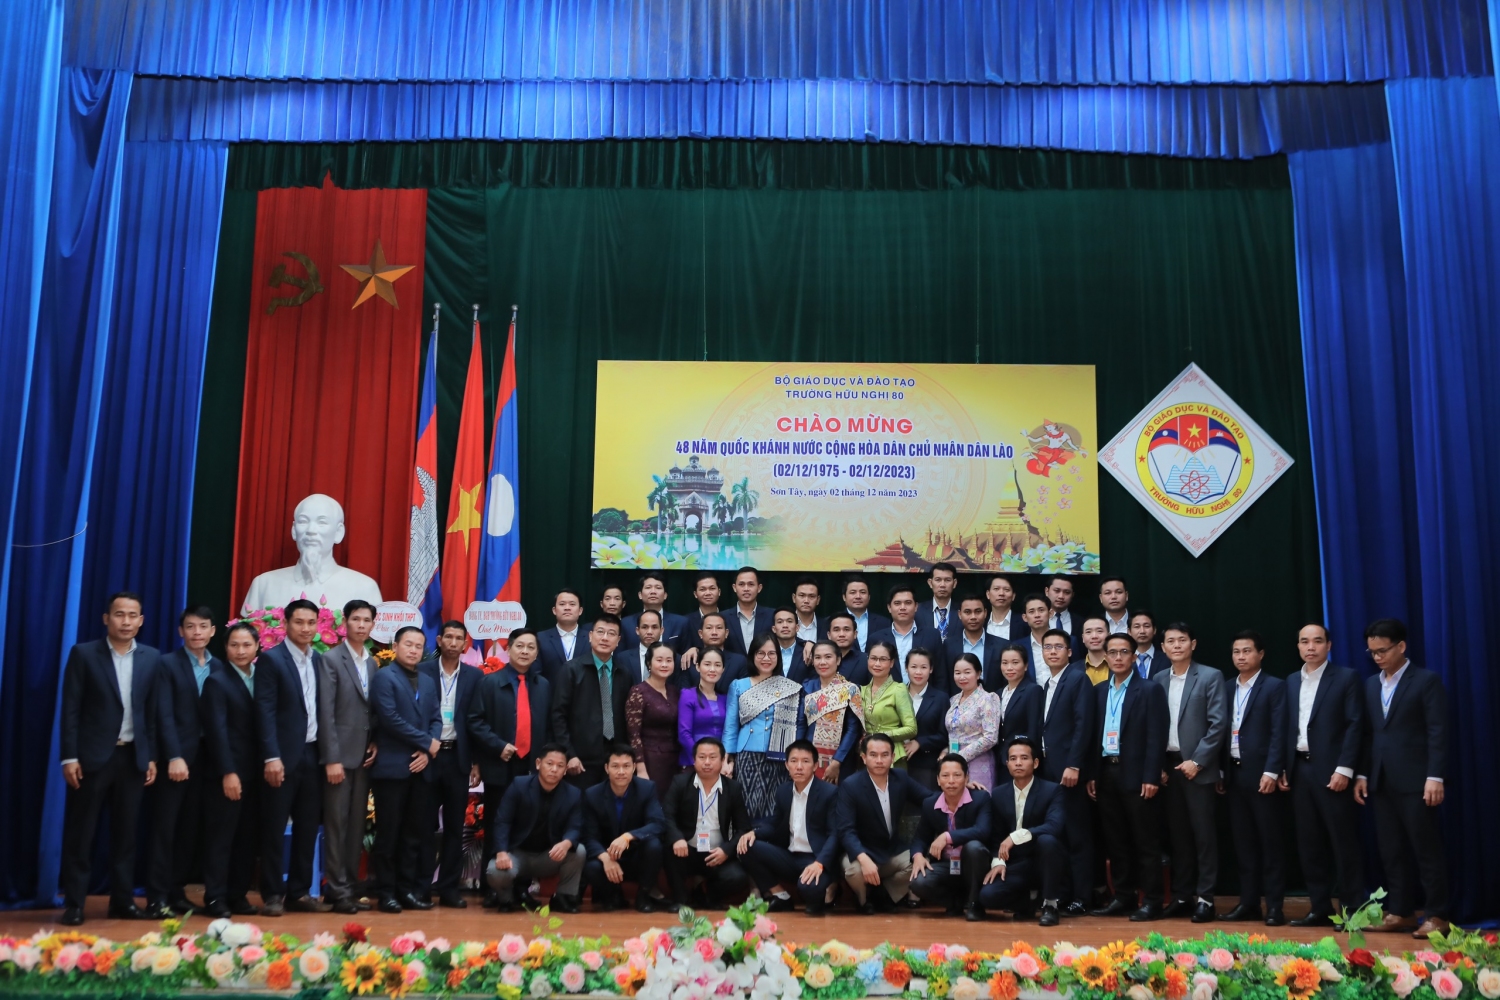 Kỷ niệm 48 năm Quốc khánh nước Cộng hòa Dân chủ Nhân dân Lào